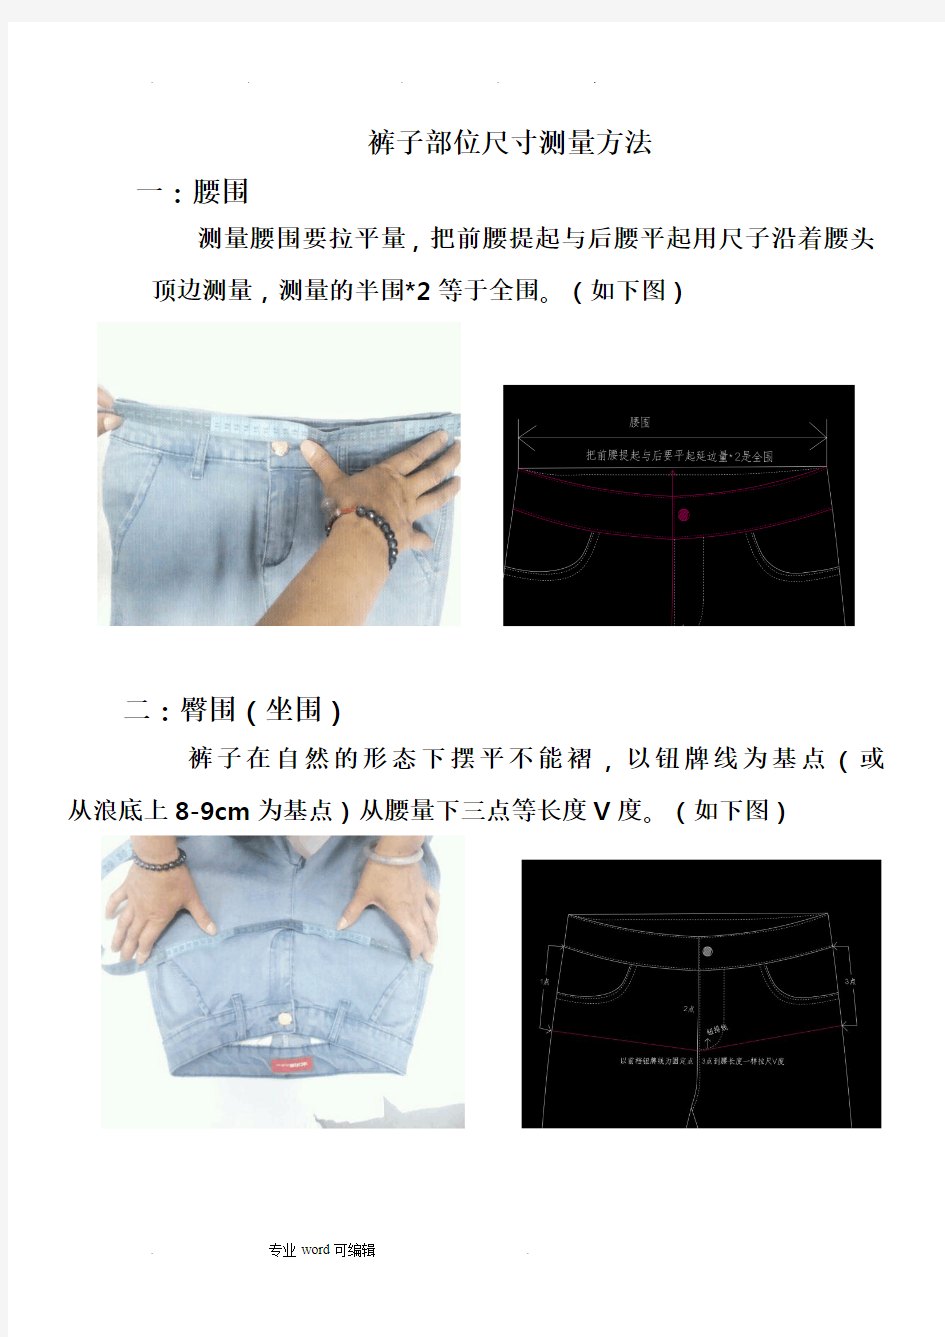 裤子部位尺寸测量方法